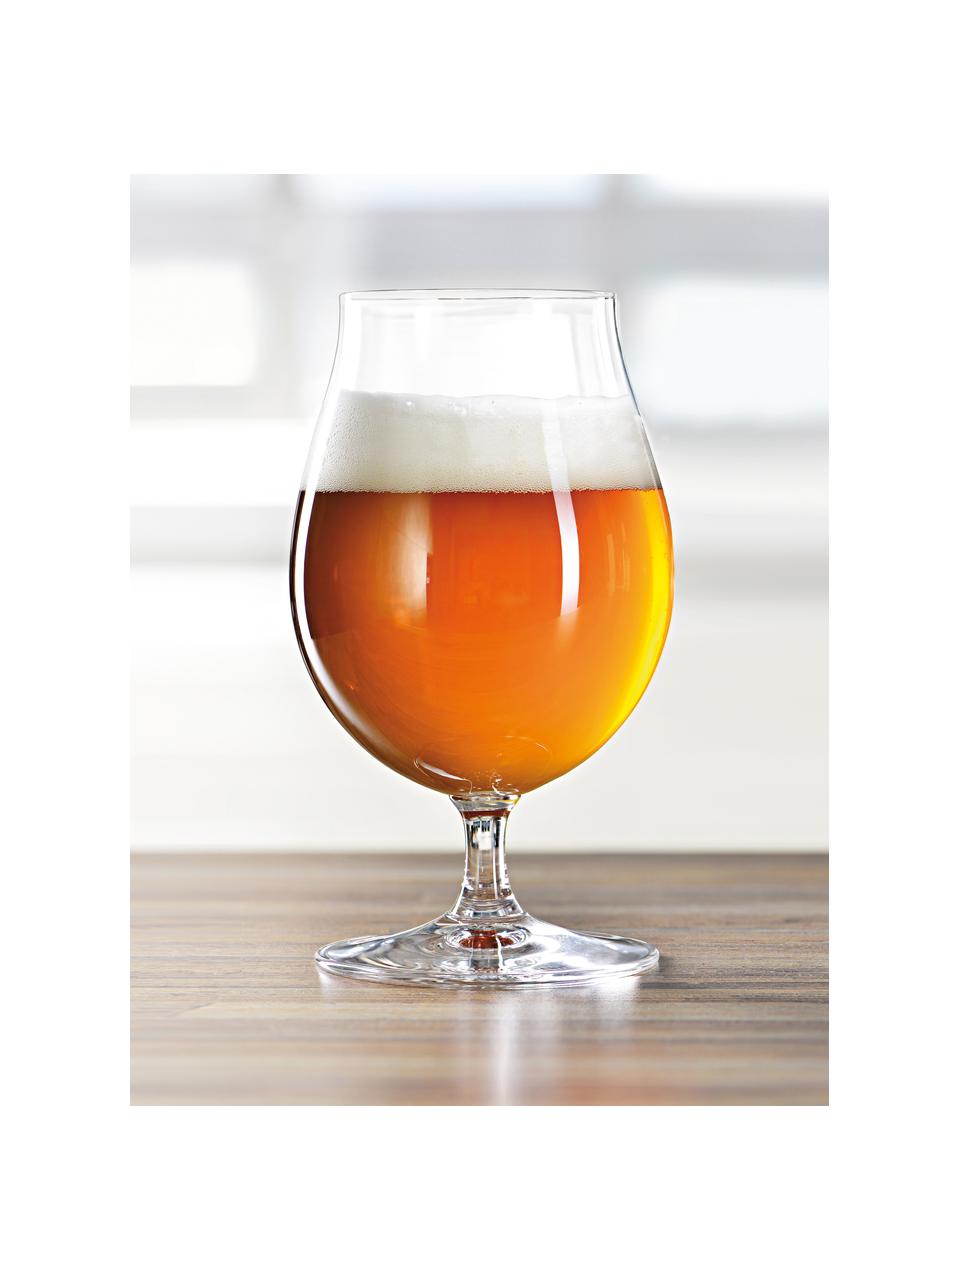 Biertulpe Beer Classics, 4 Stück, Kristallglas, Transparent, Ø 9 x H 16 cm, 470 ml